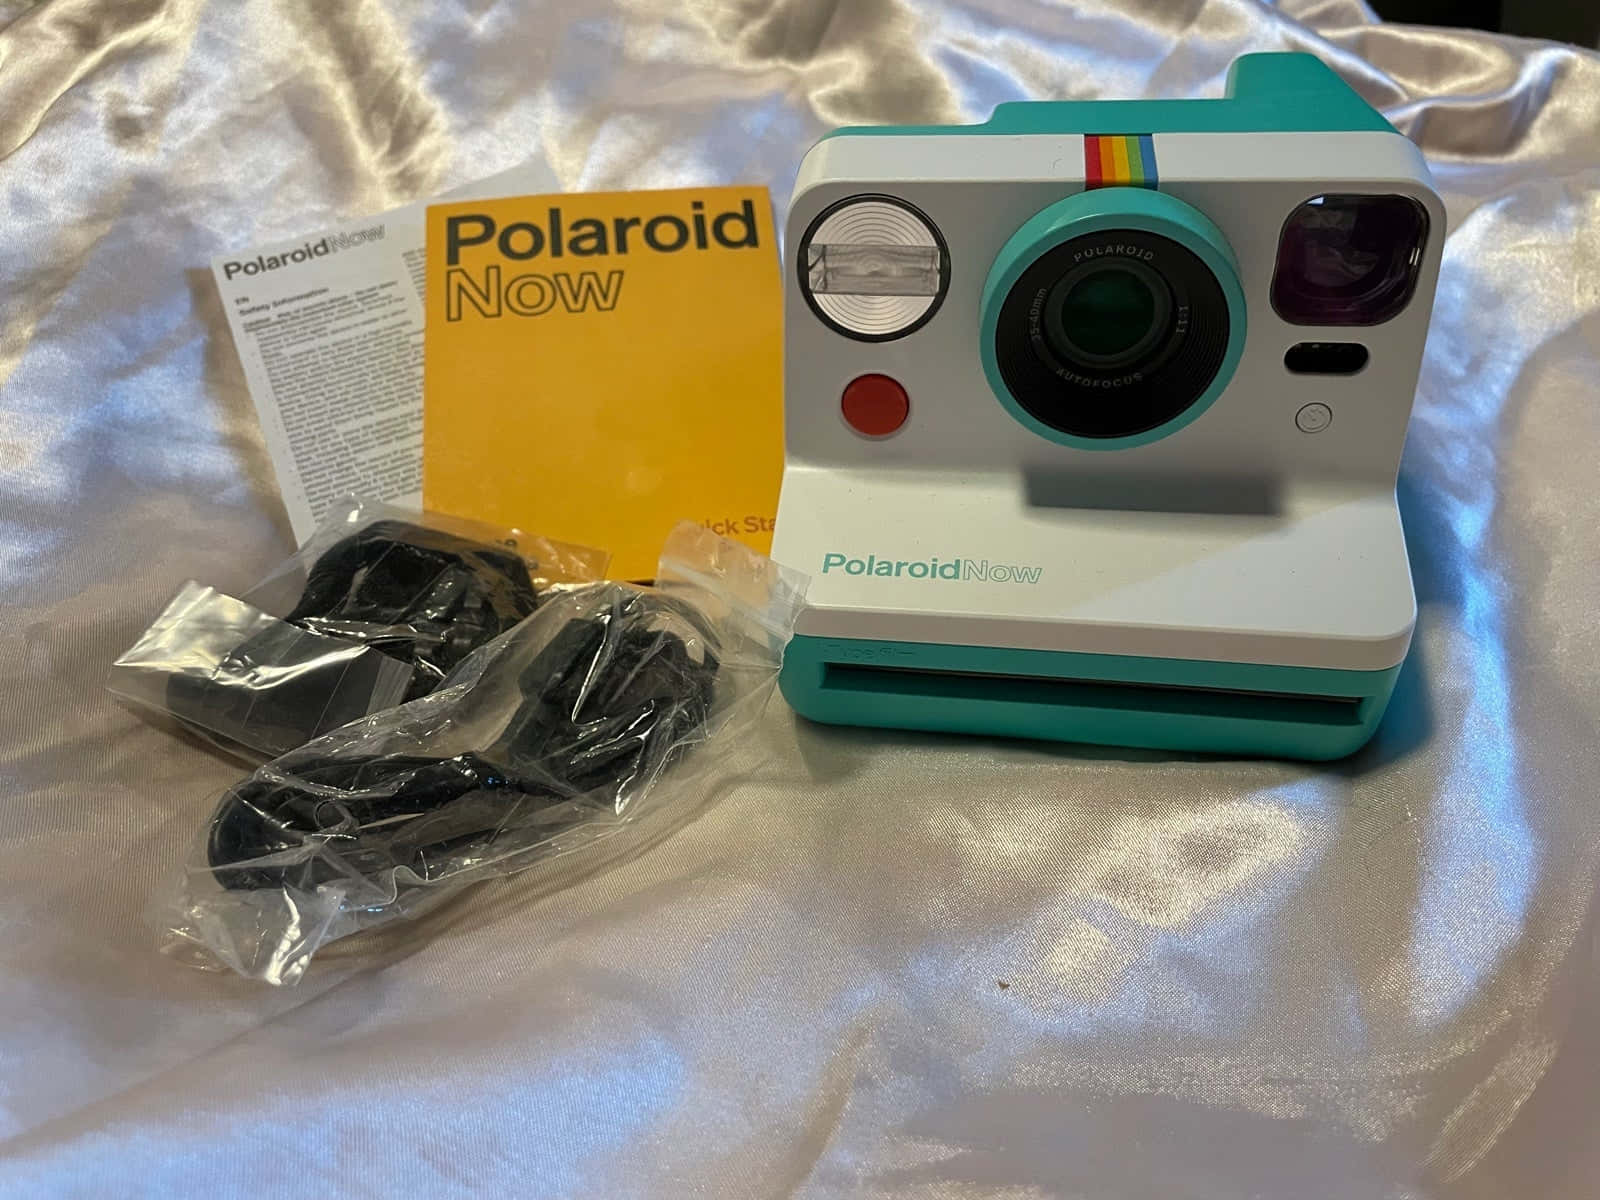 Nuovafotocamera Polaroid Ora Immagine.